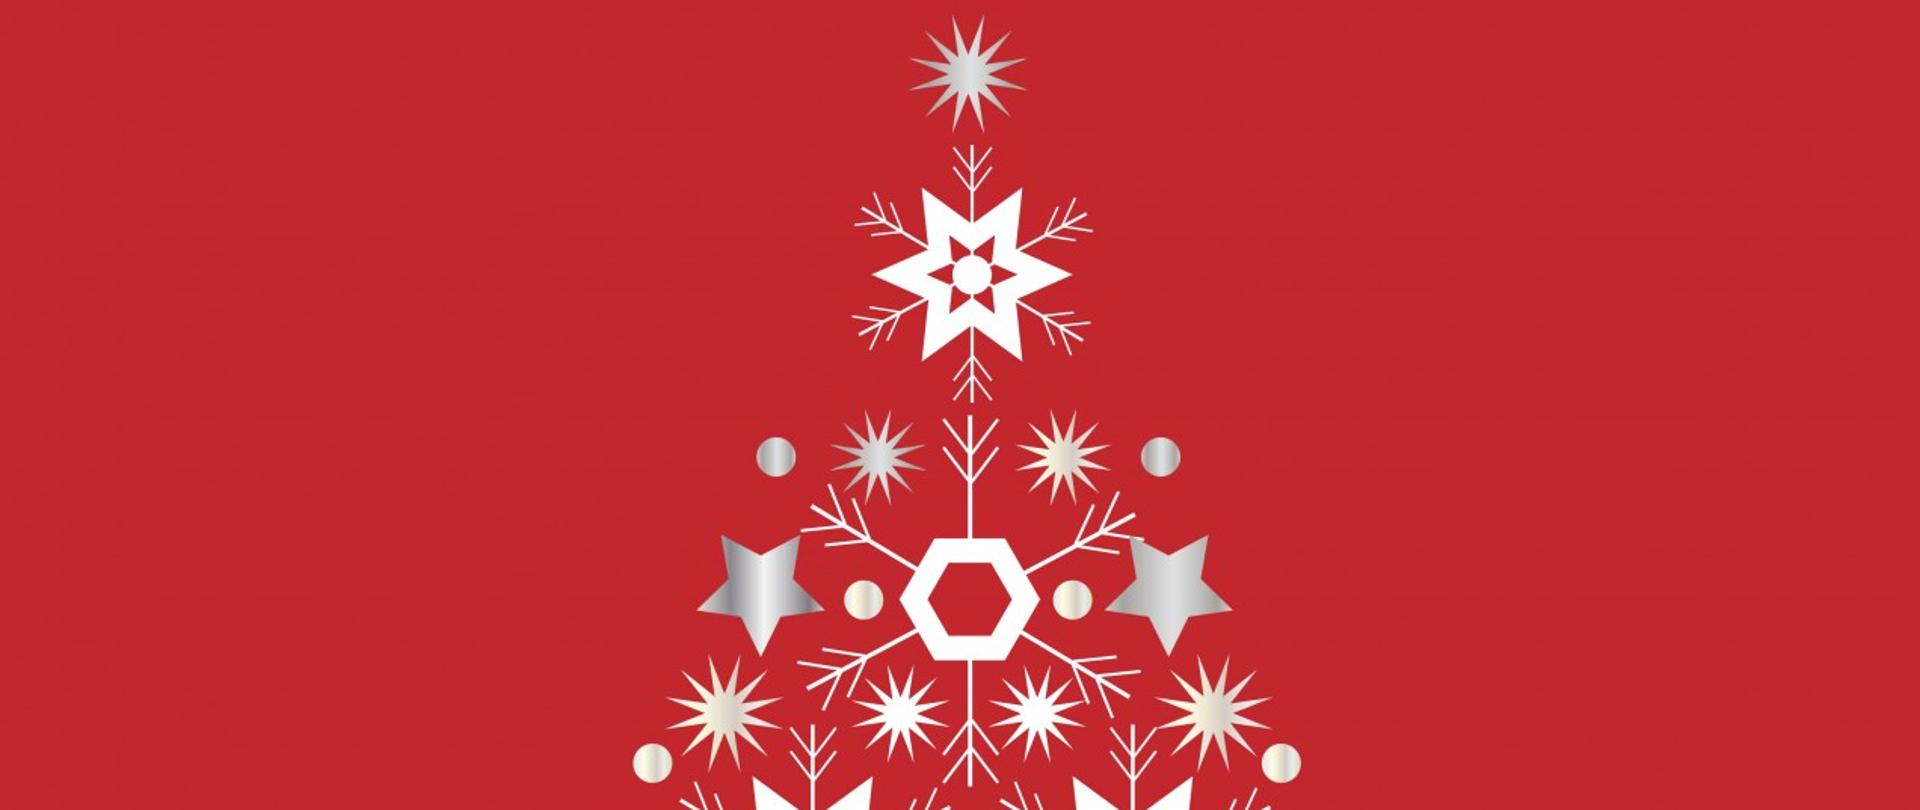 grafika choinki na czerwonym tle, zarys choinki wykonany z białych i szarych gwiazdek i płatków śniegu